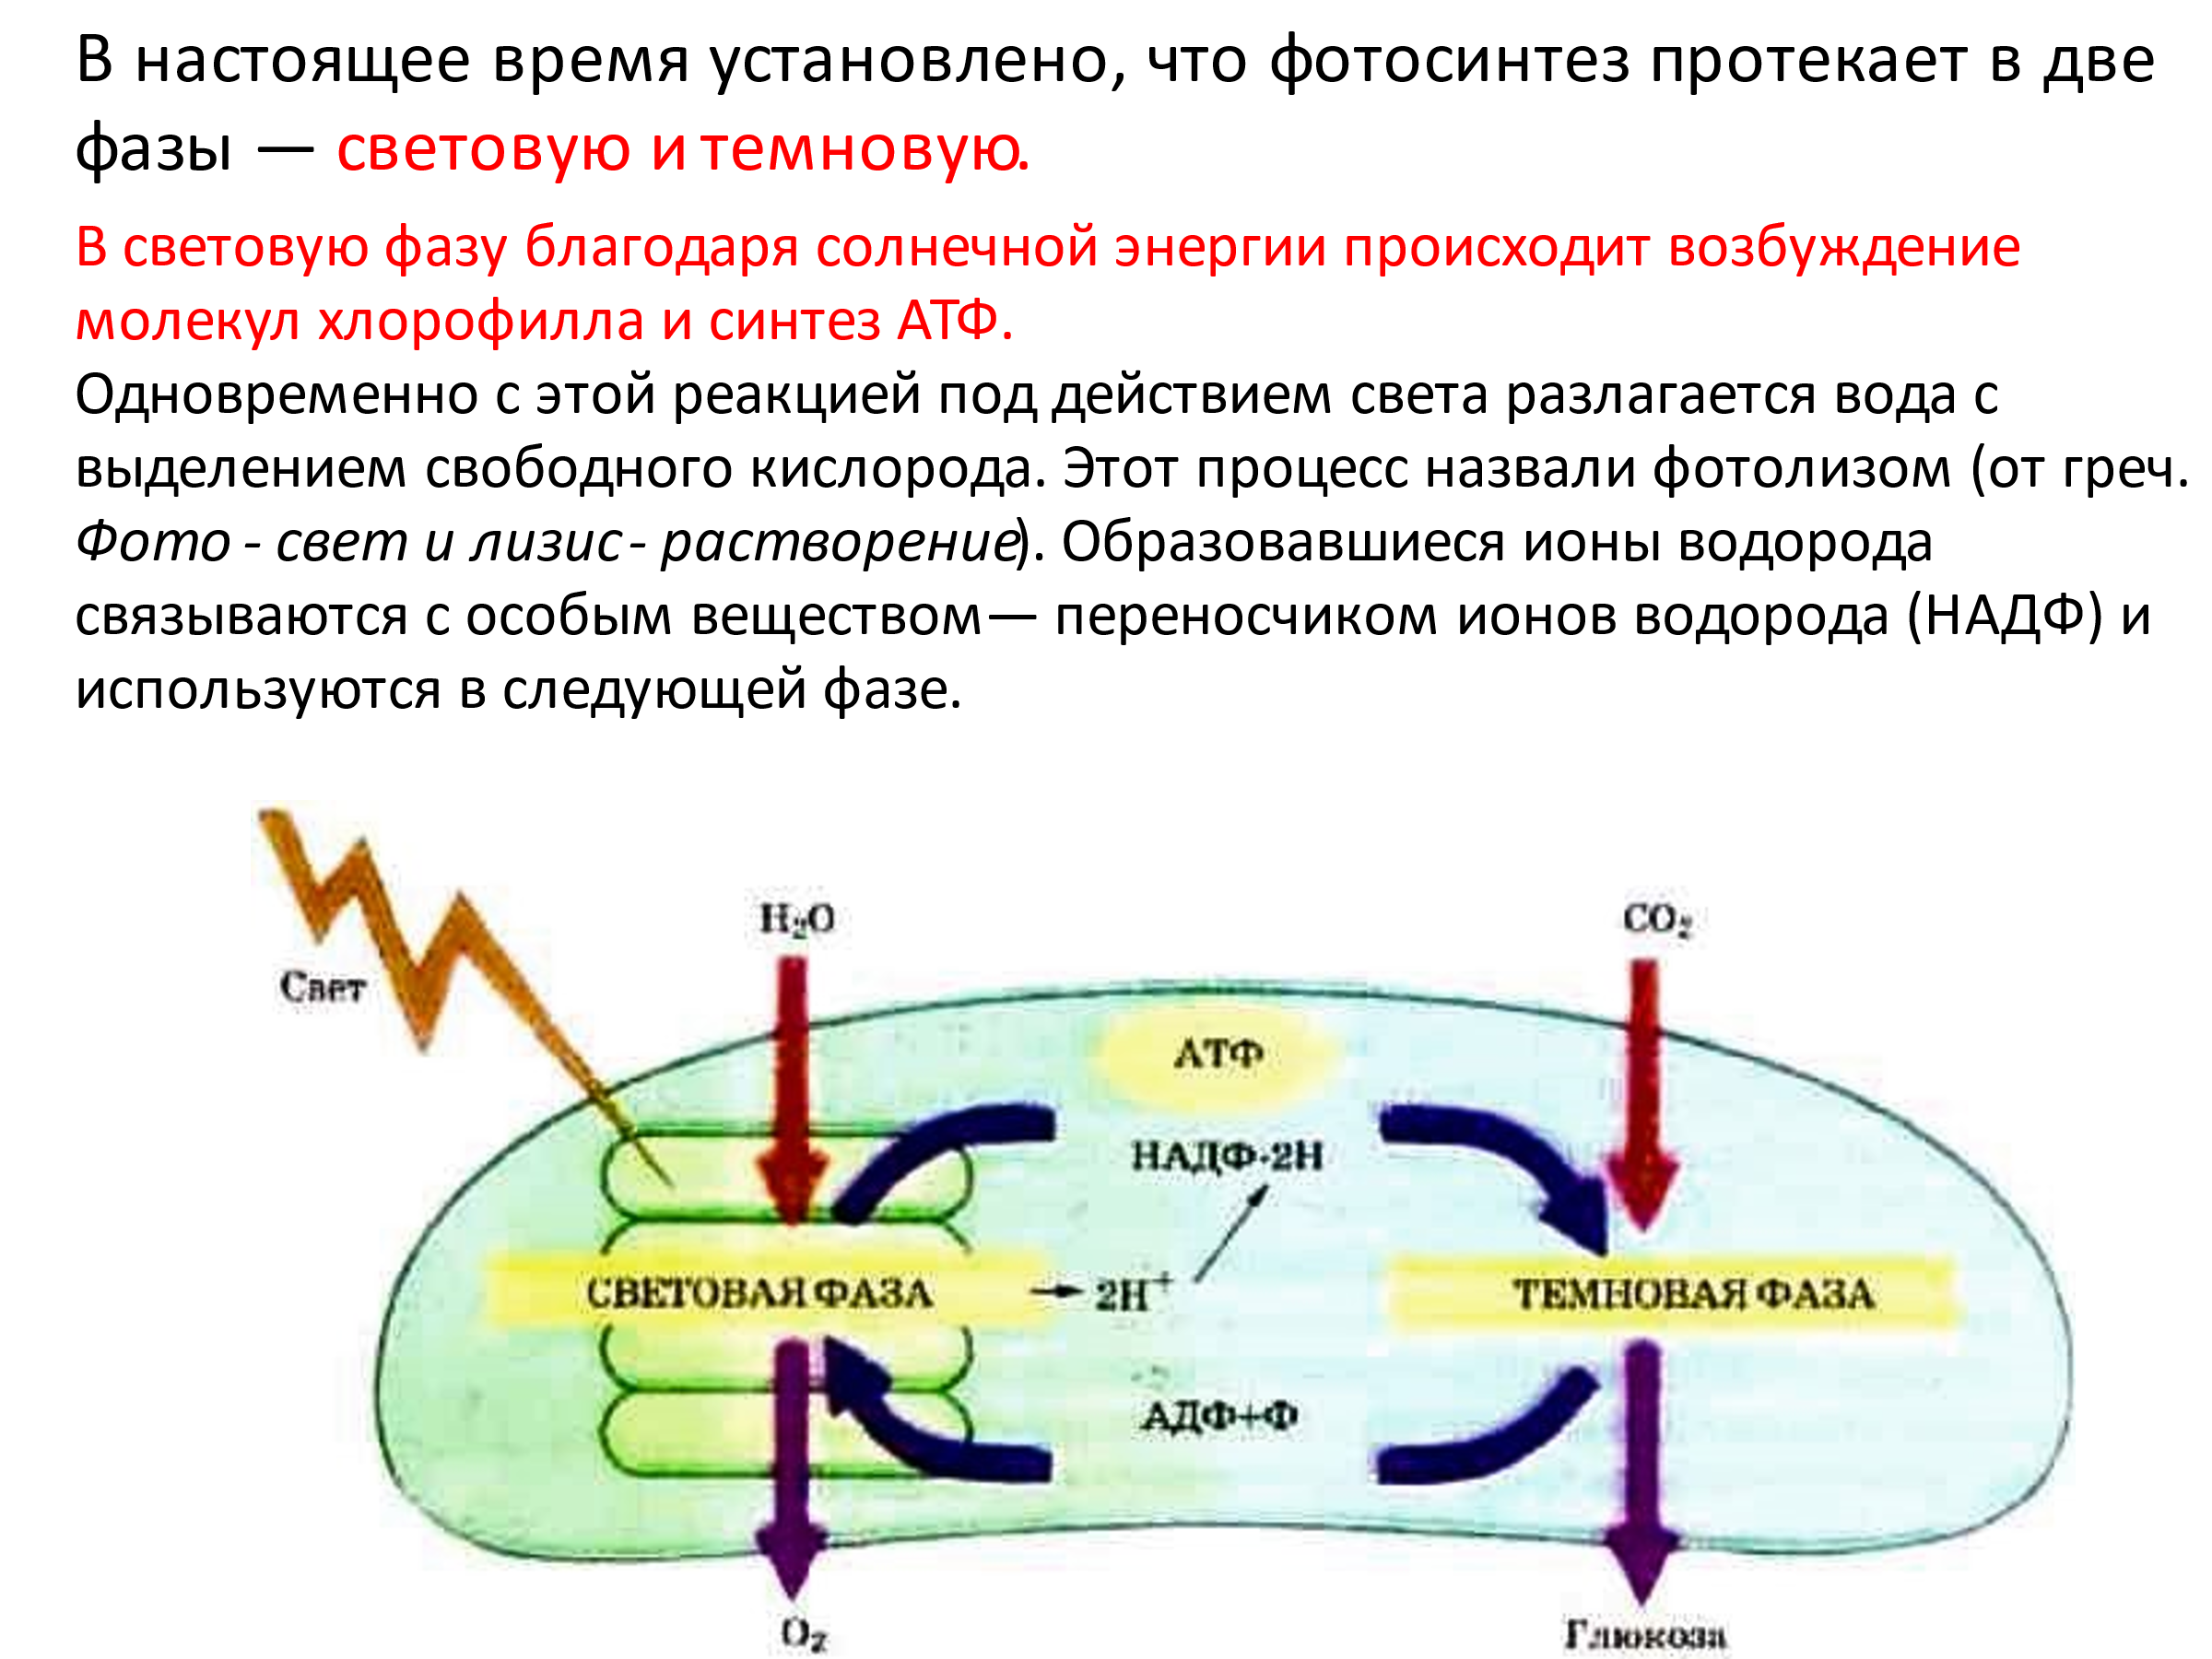 В световую фазу фотосинтеза происходит синтез. Схема этап фотосинтеза на котором происходит Синтез АТФ. Схема процесса фотосинтеза. Схема фотосинтеза ЕГЭ. Этапы фотосинтеза таблица.